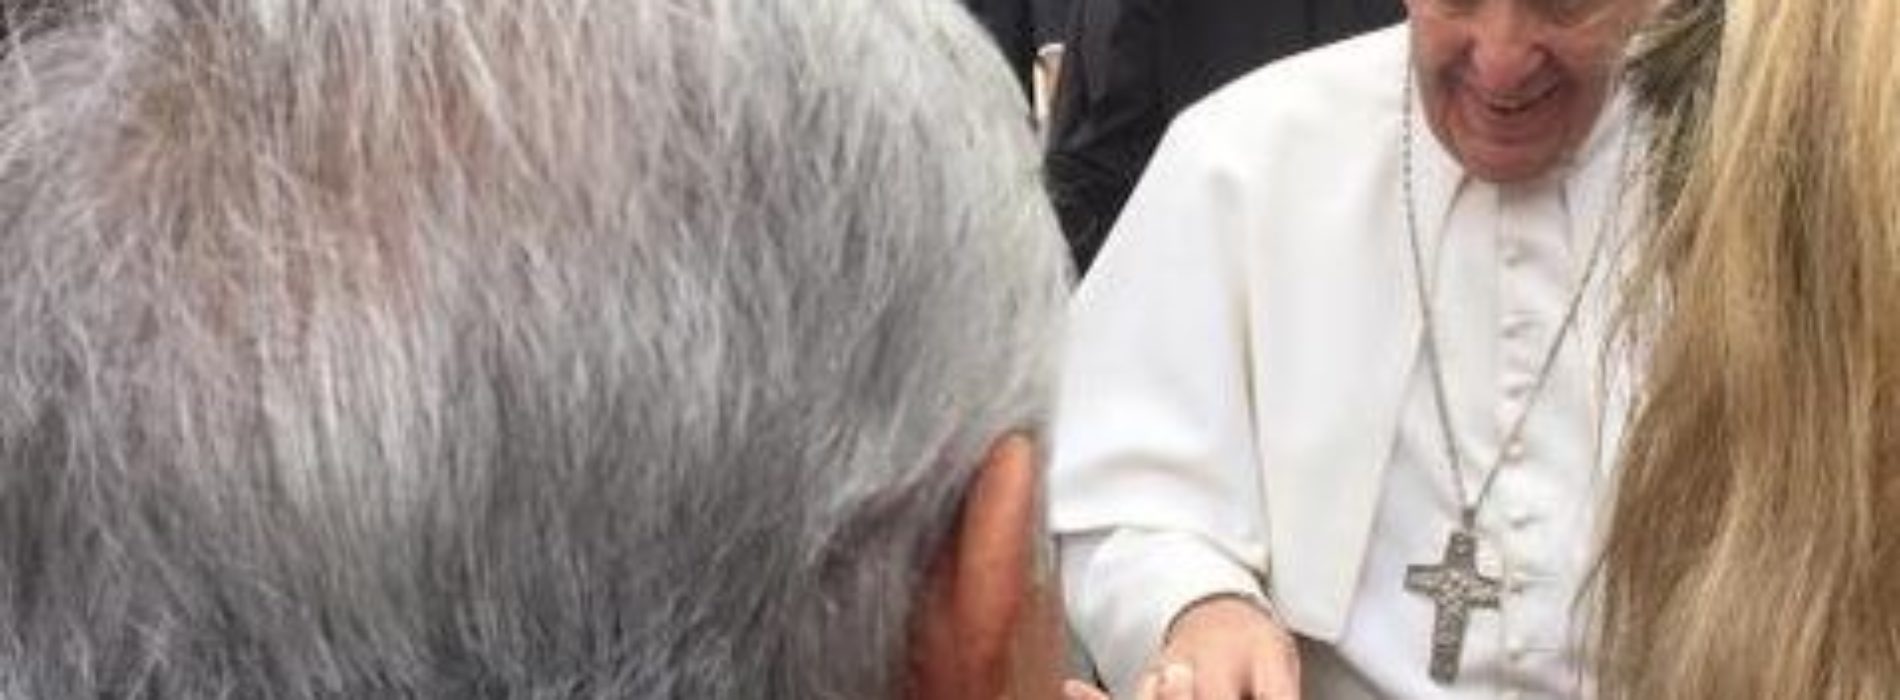 Nuestro pueblo tiene hambre y sed de justicia: AMLO al Papa